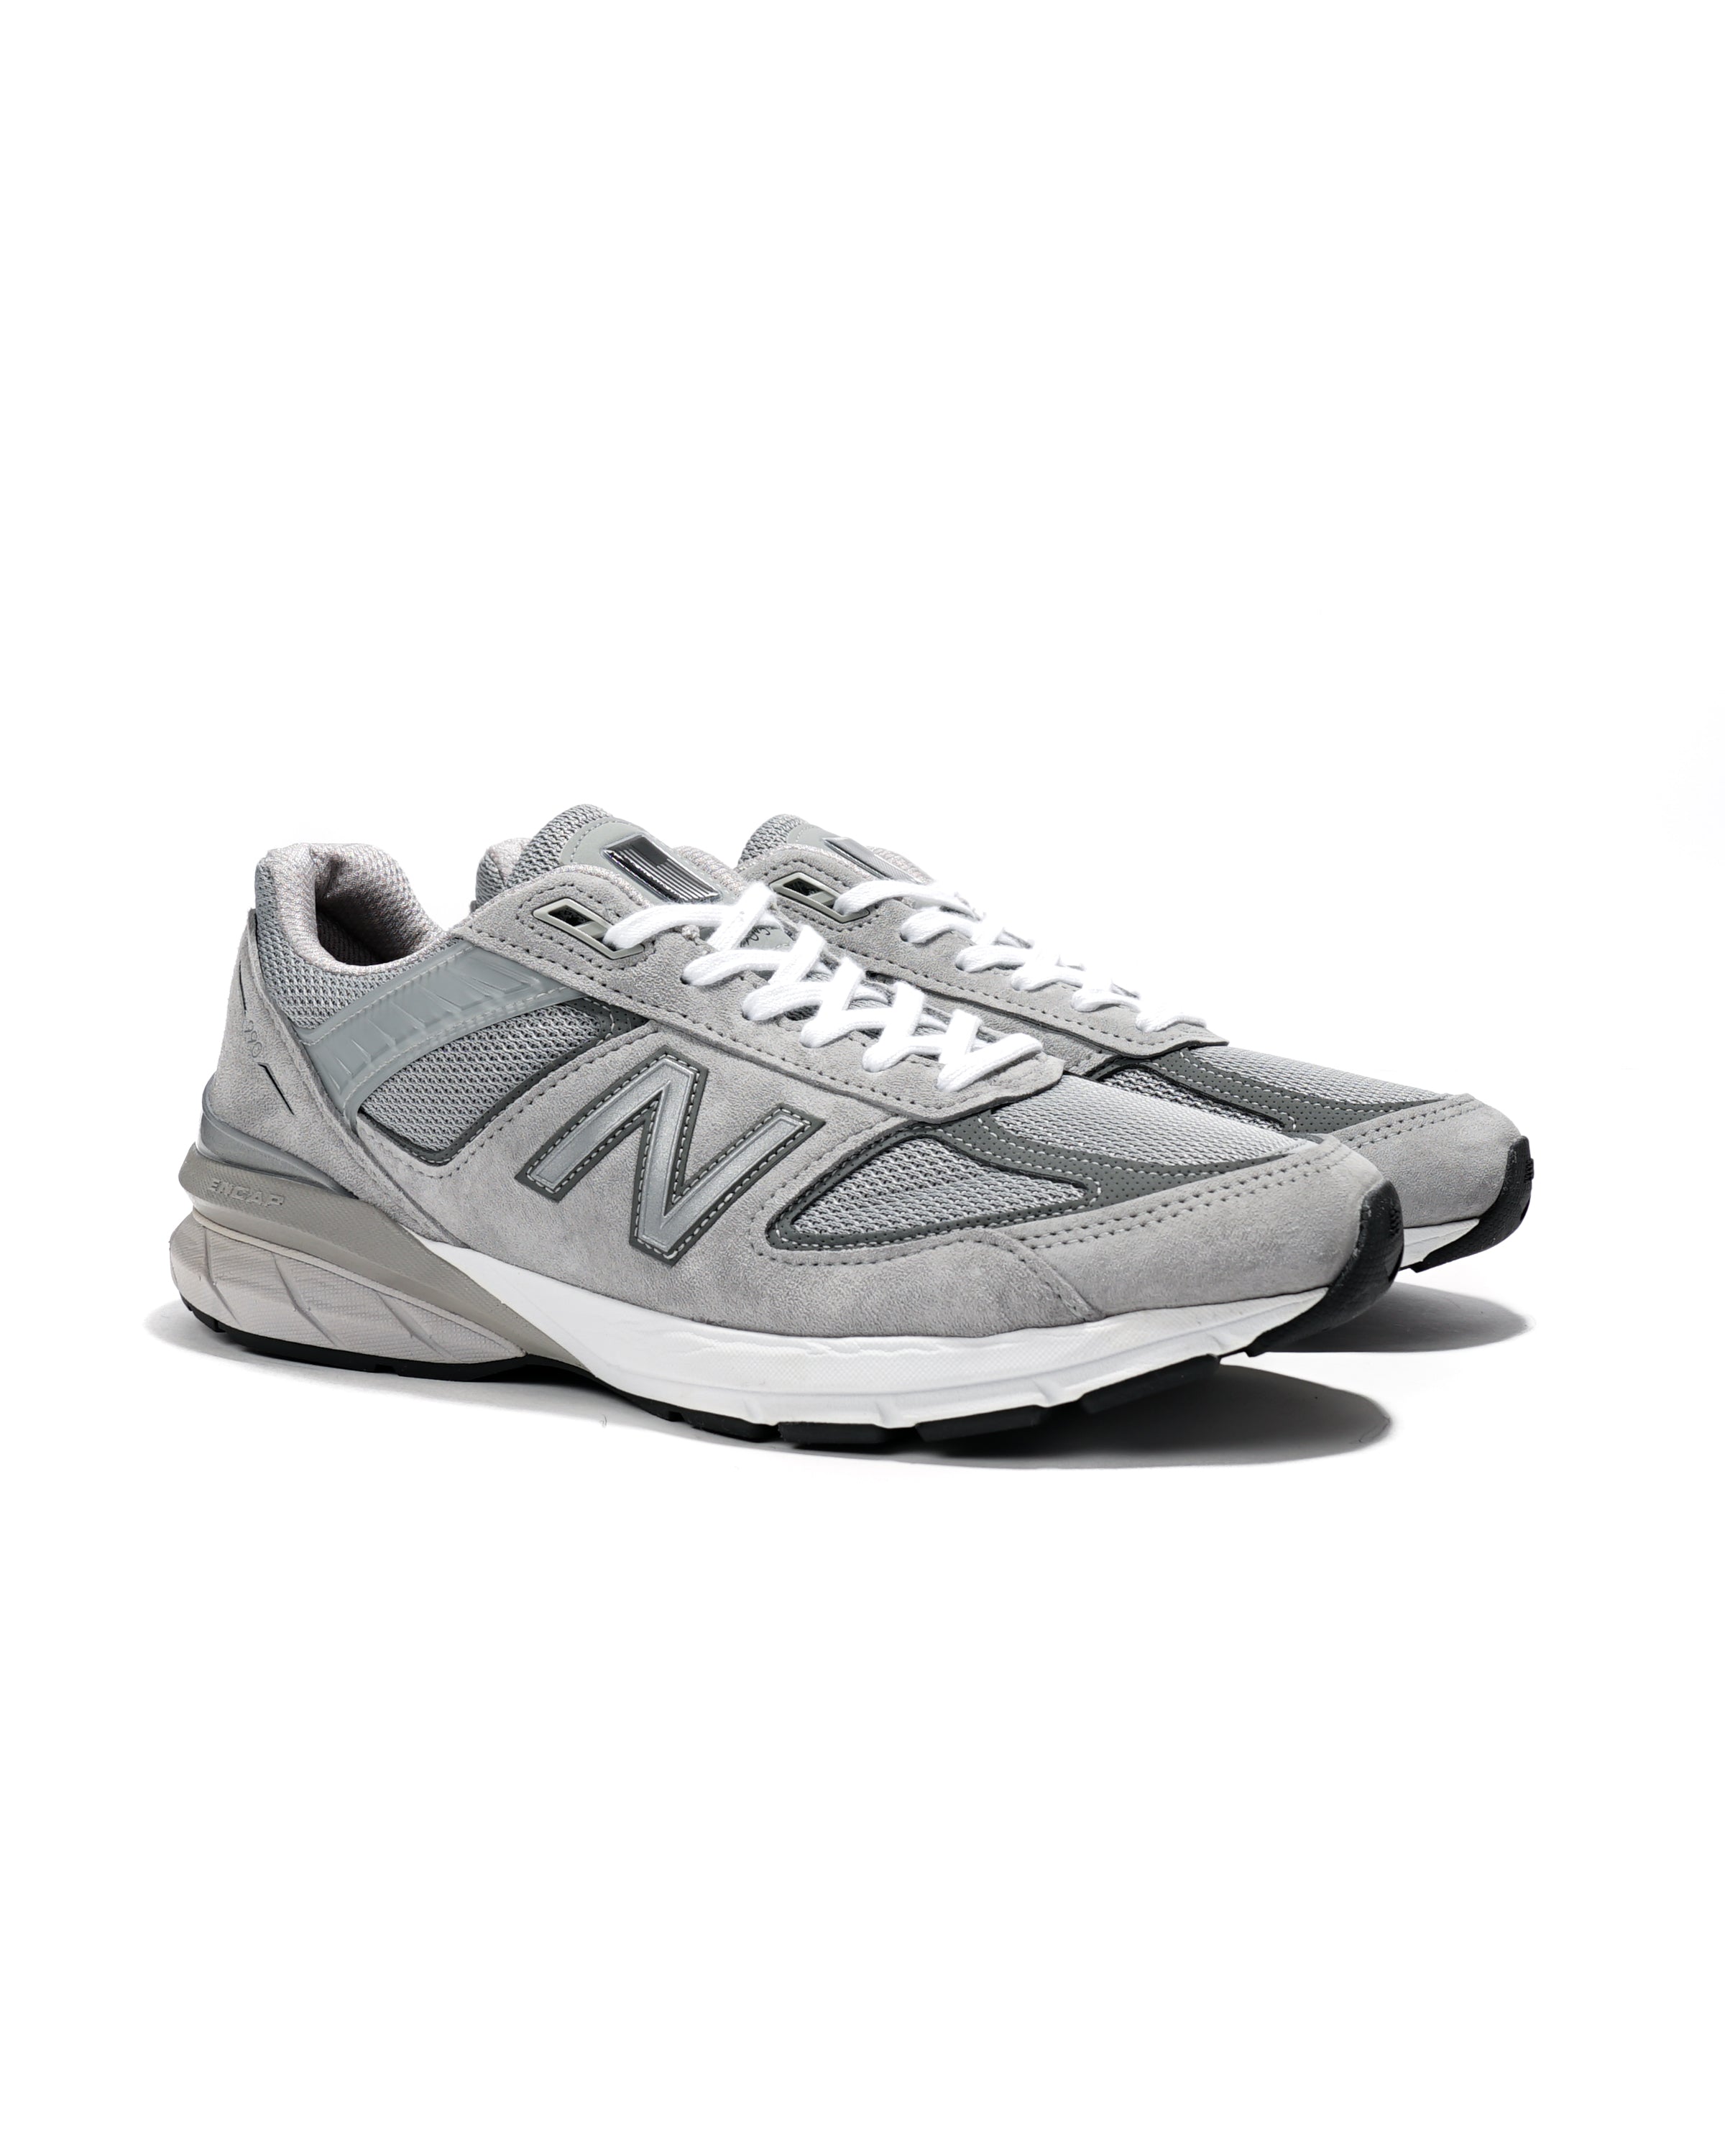 New Balance 990 V5 - Grey